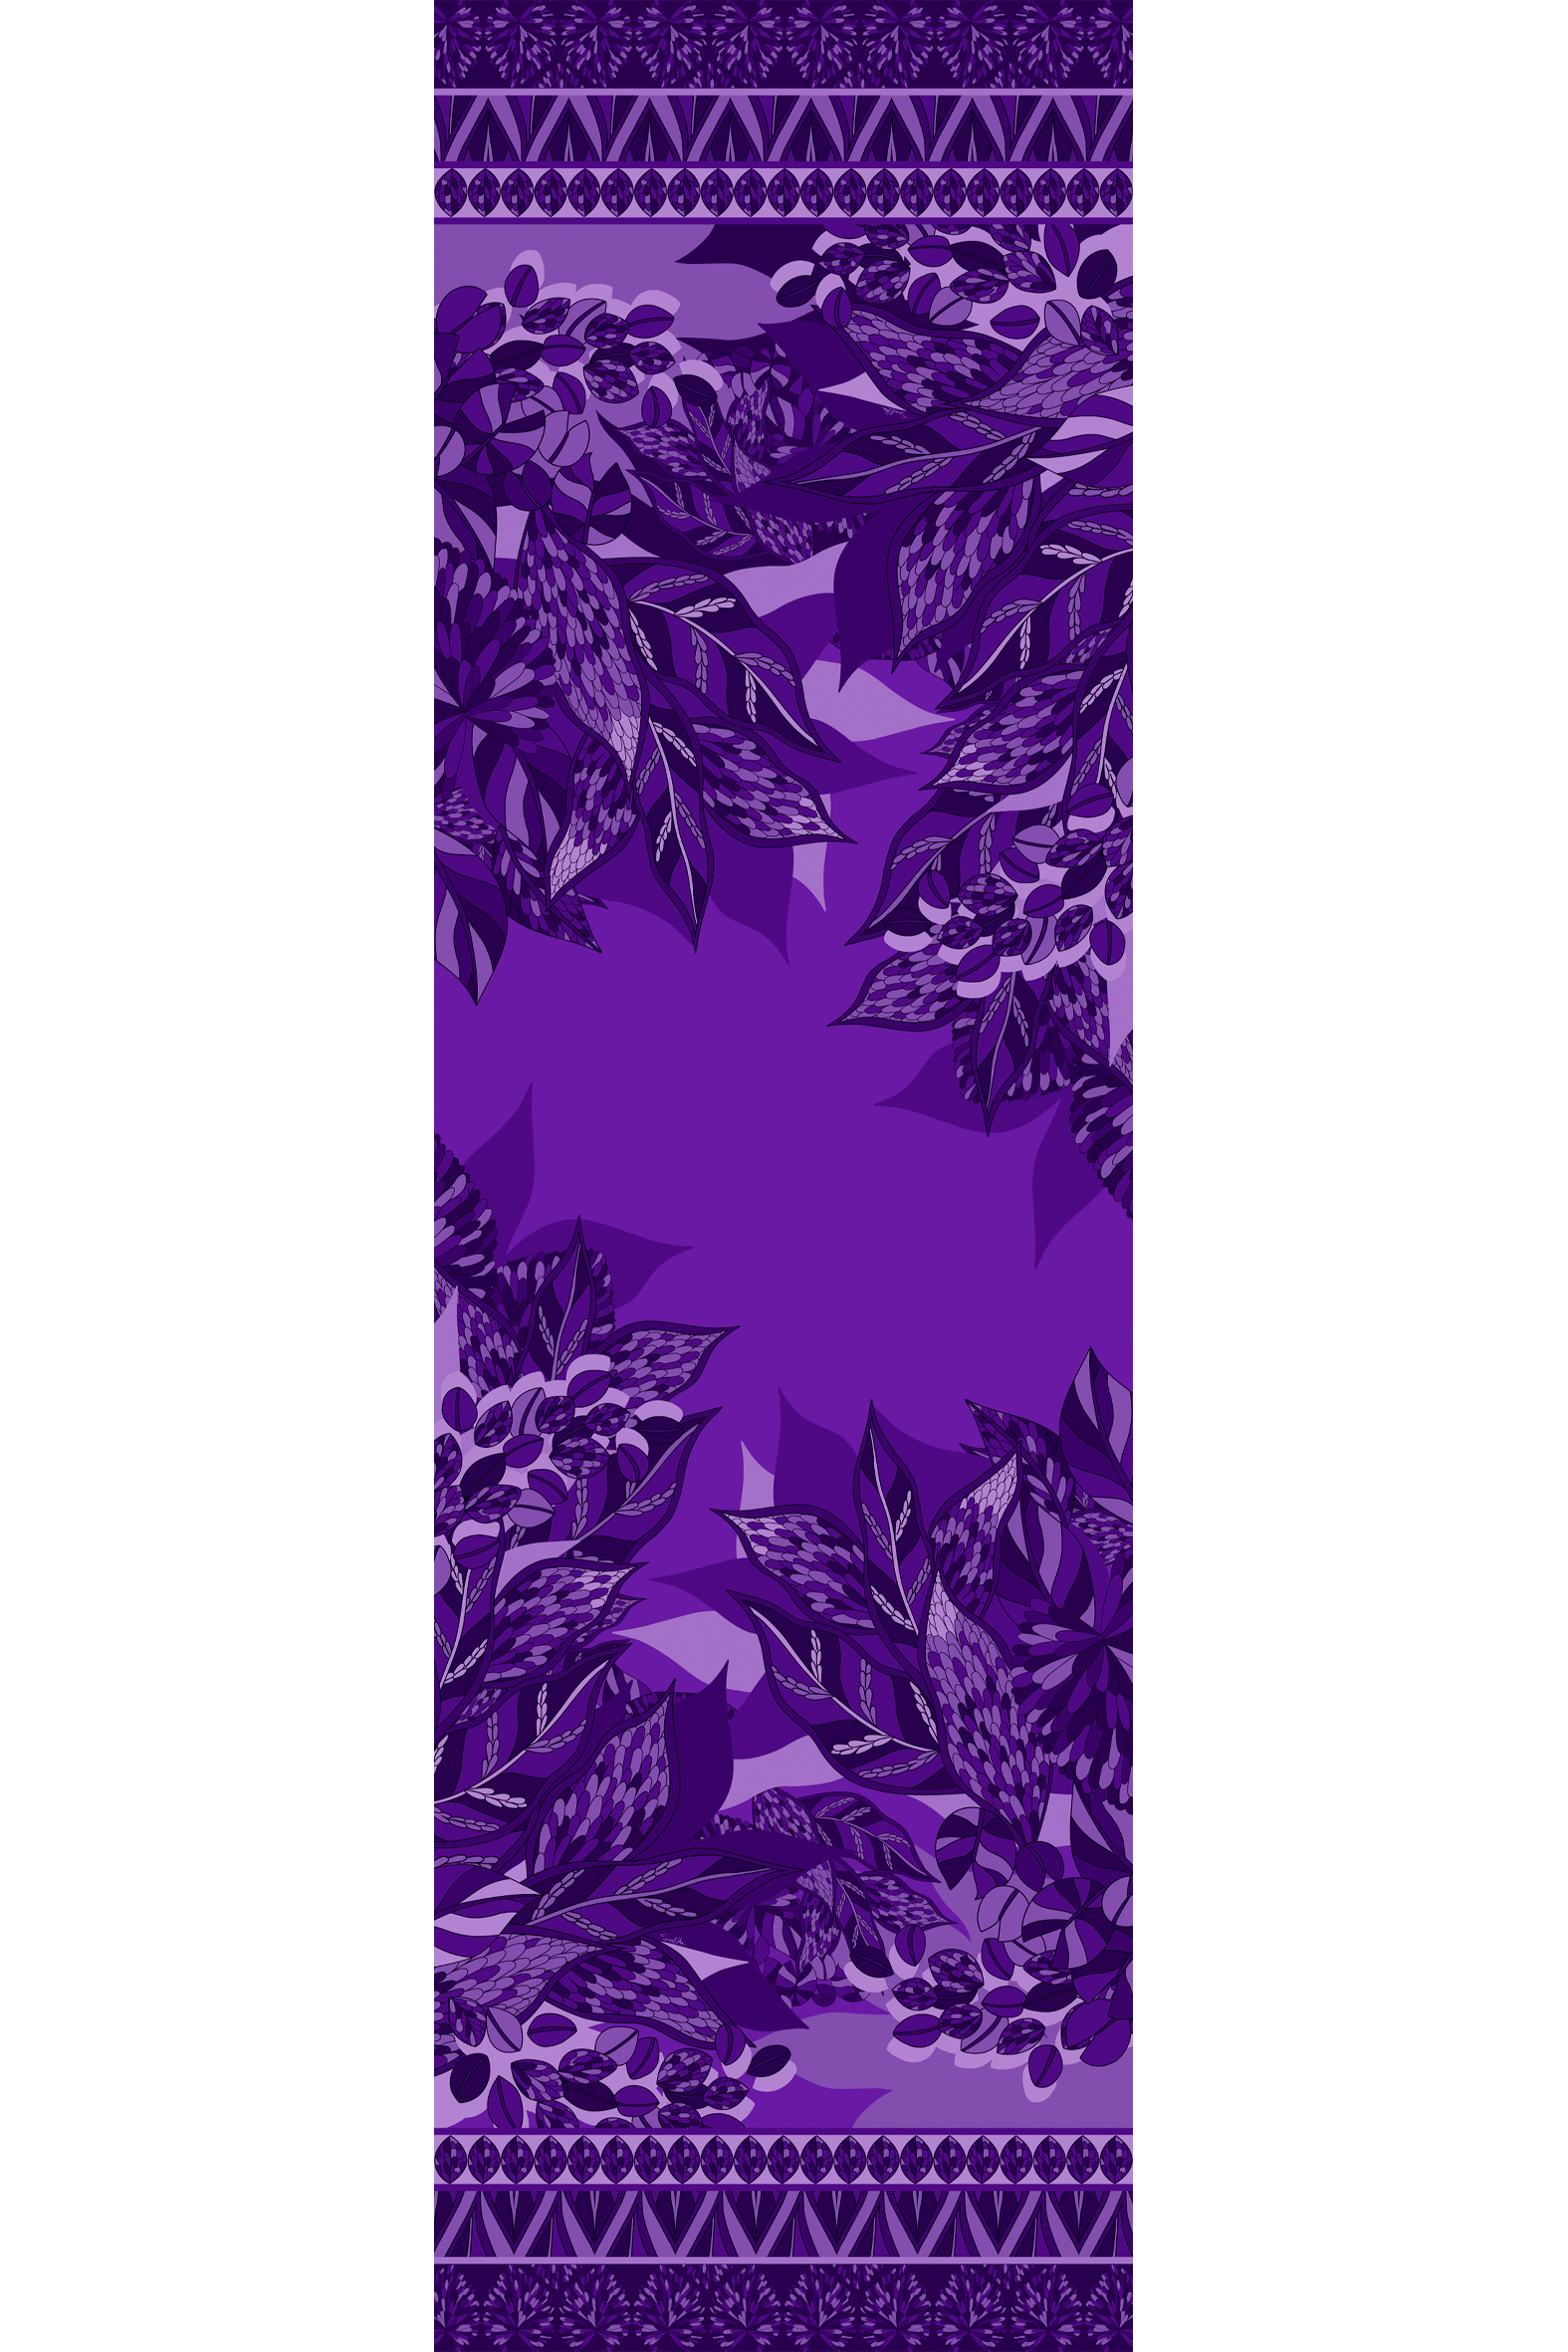 Echarpe Ramos de púrpura roxo em mousseline de seda | 60X210cm